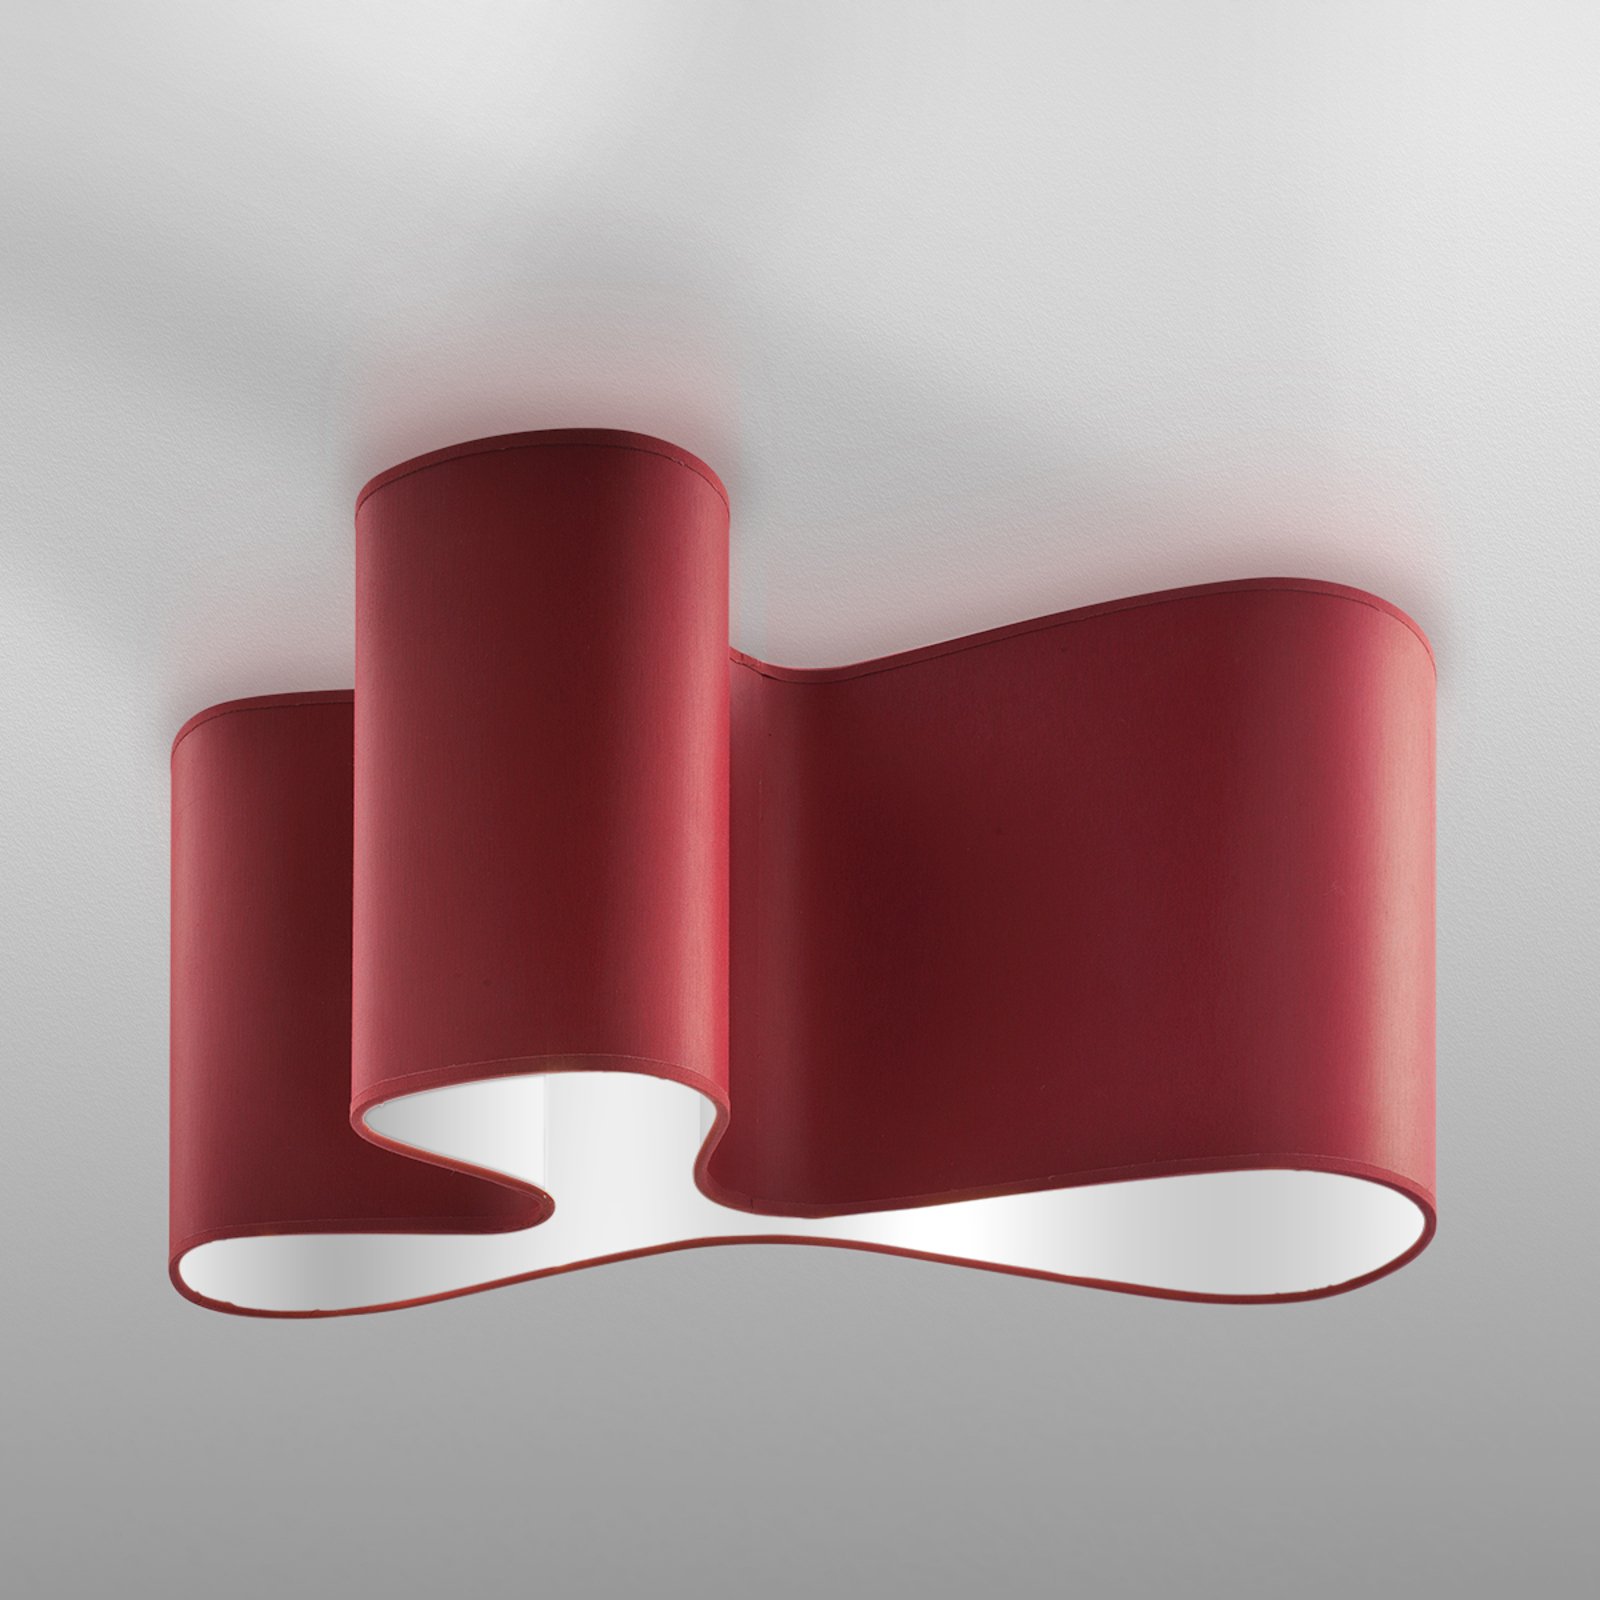 Designer ceiling light Mugello red/white